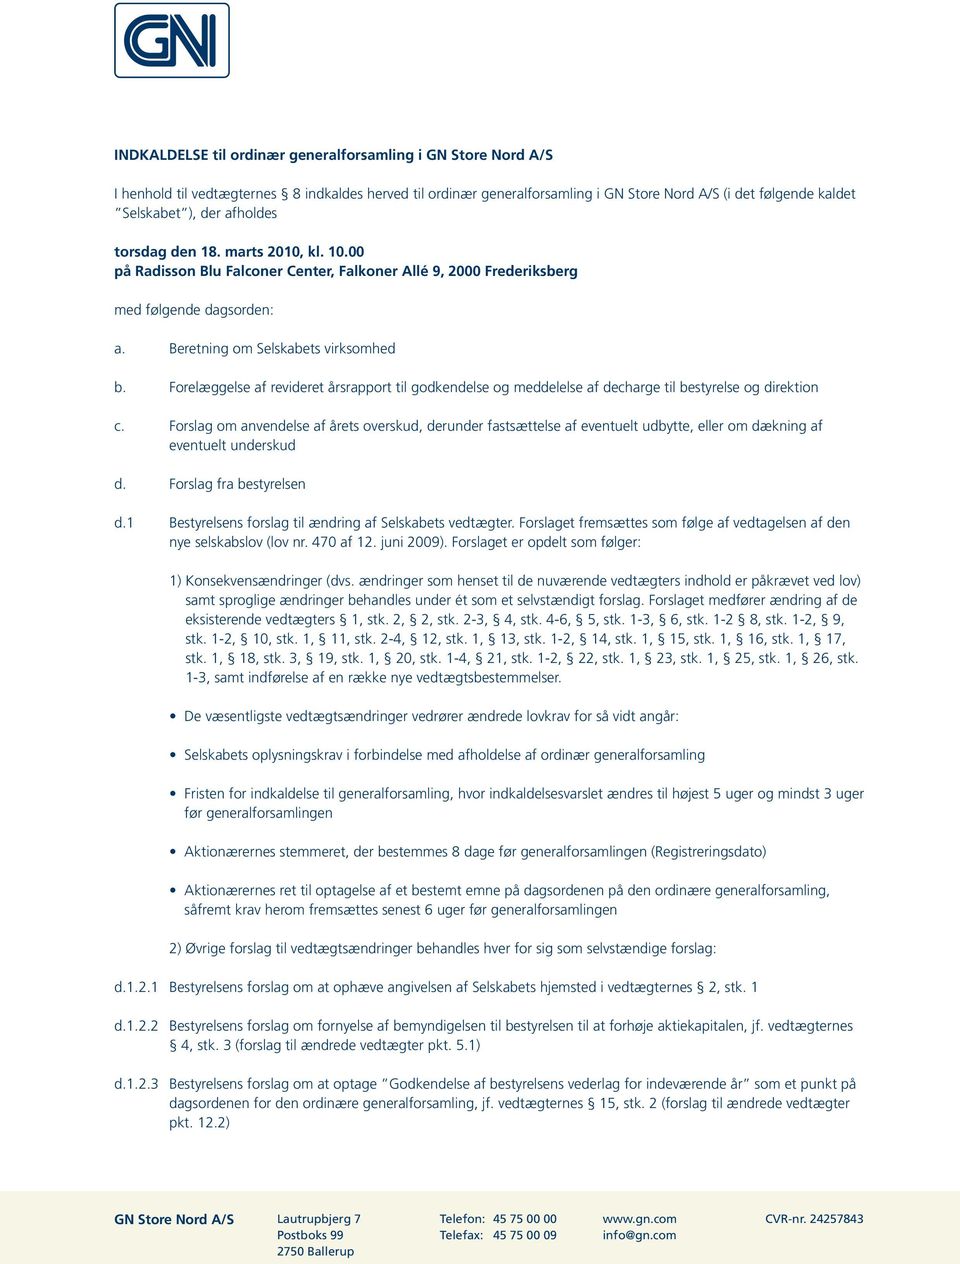 Forelæggelse af revideret årsrapport til godkendelse og meddelelse af decharge til bestyrelse og direktion c.